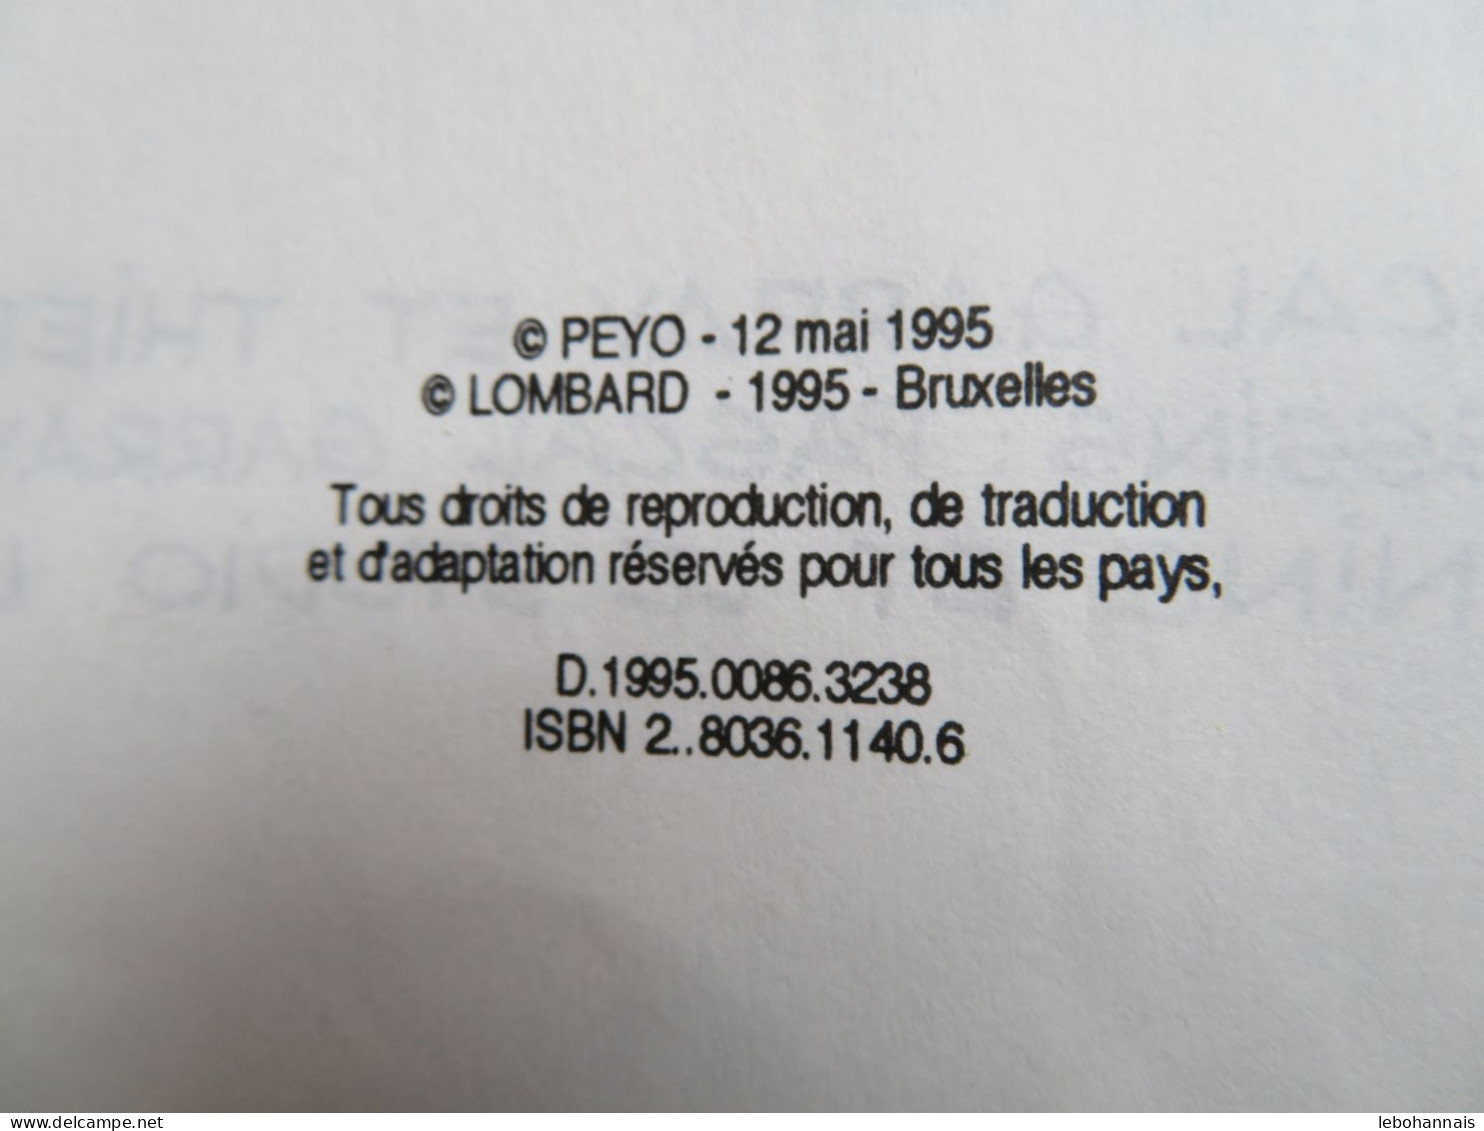 Benoit Brisefer N° 9 L'ile De La Désunion Peyo Edition Originale 1995 Le Lombard - Benoît Brisefer